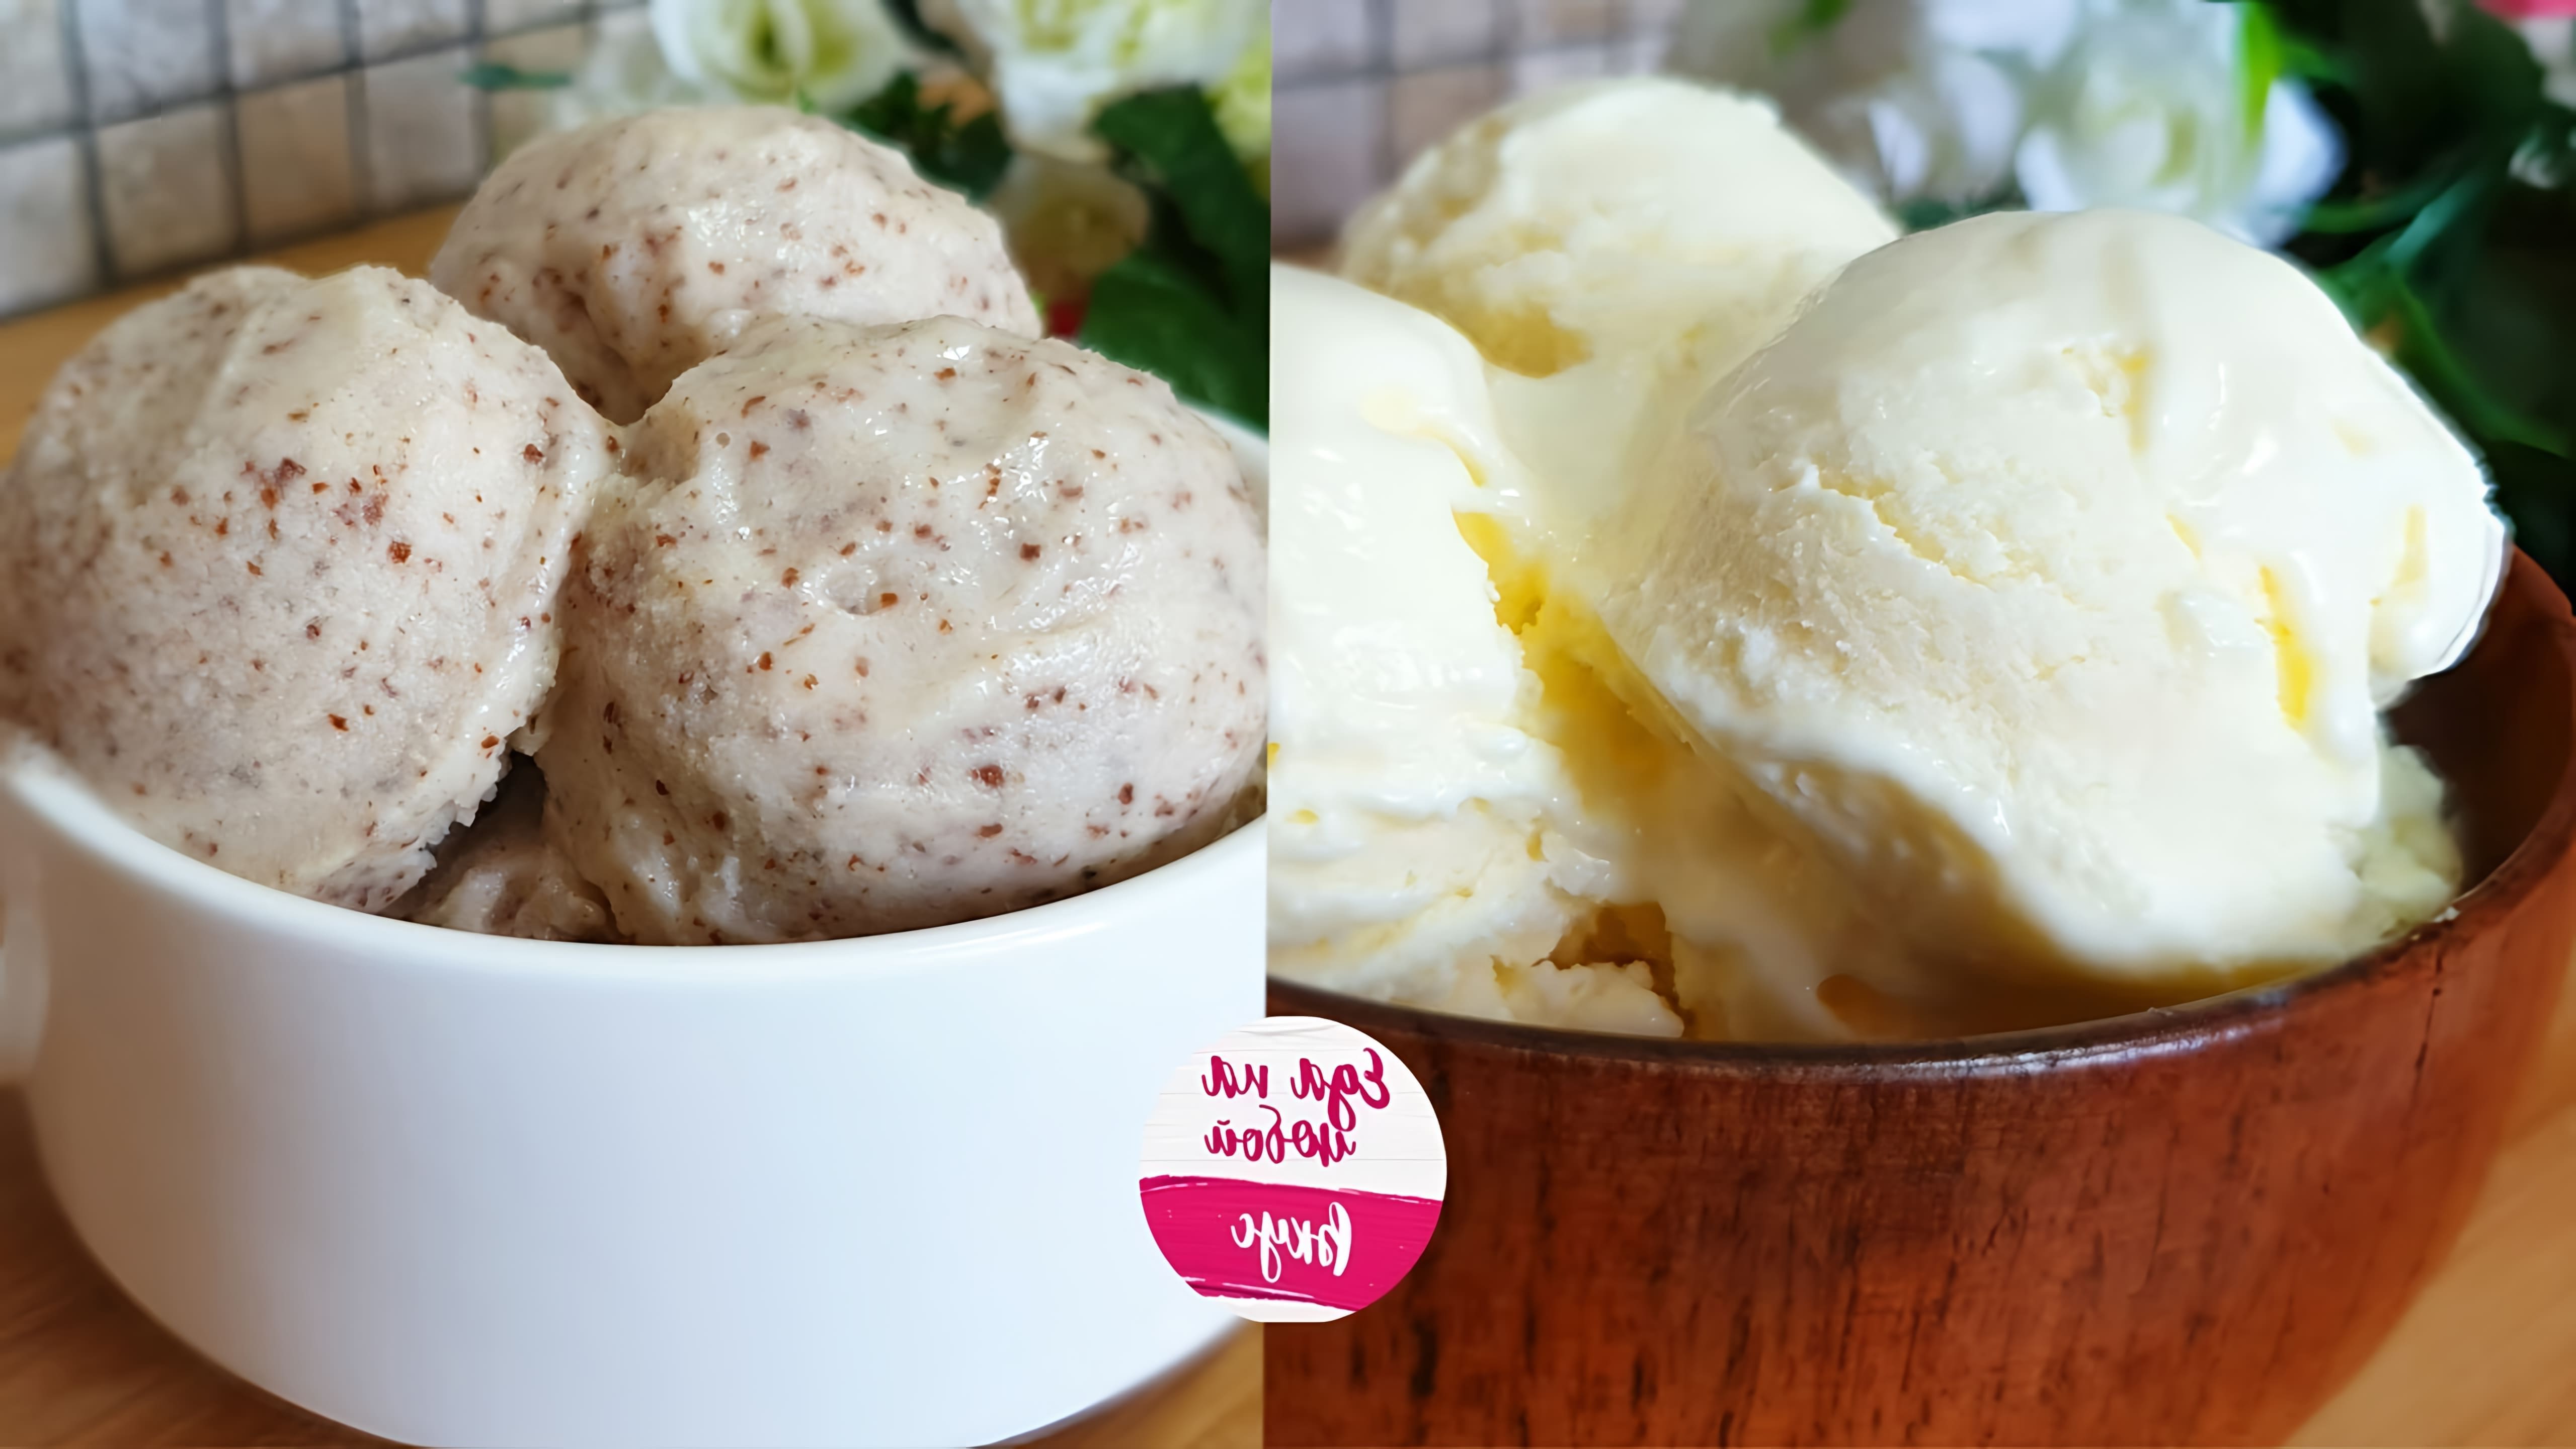 В этом видео демонстрируется два рецепта домашнего мороженого: сливочно-ванильное и шоколадное с крошкой